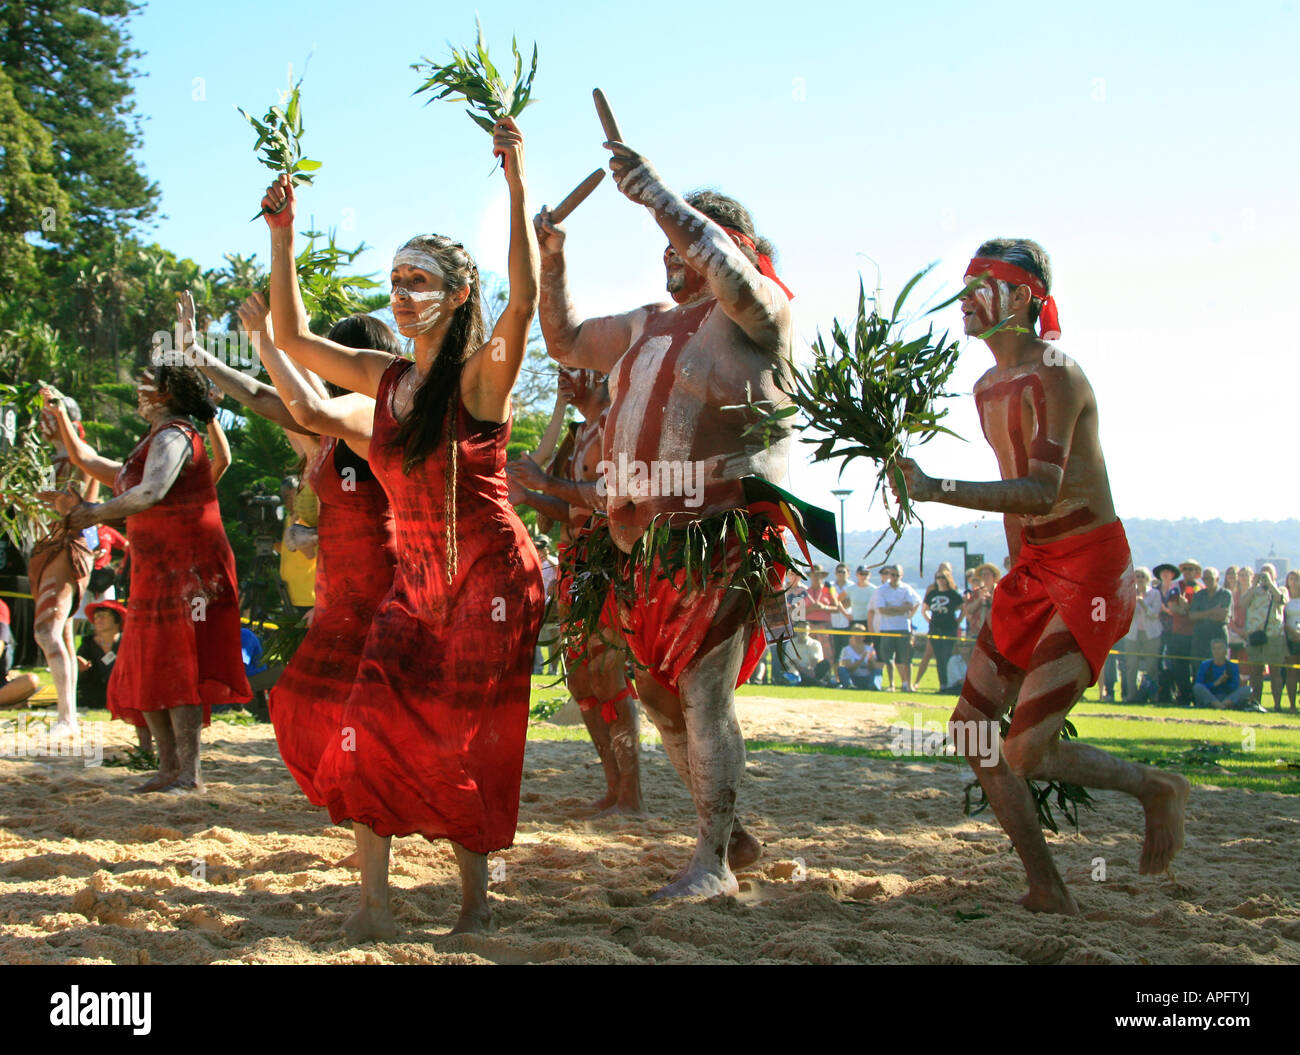 Les spectacles de danse autochtones sur l'Australie à Farm cove dans les jardins botaniques de Sydney Banque D'Images